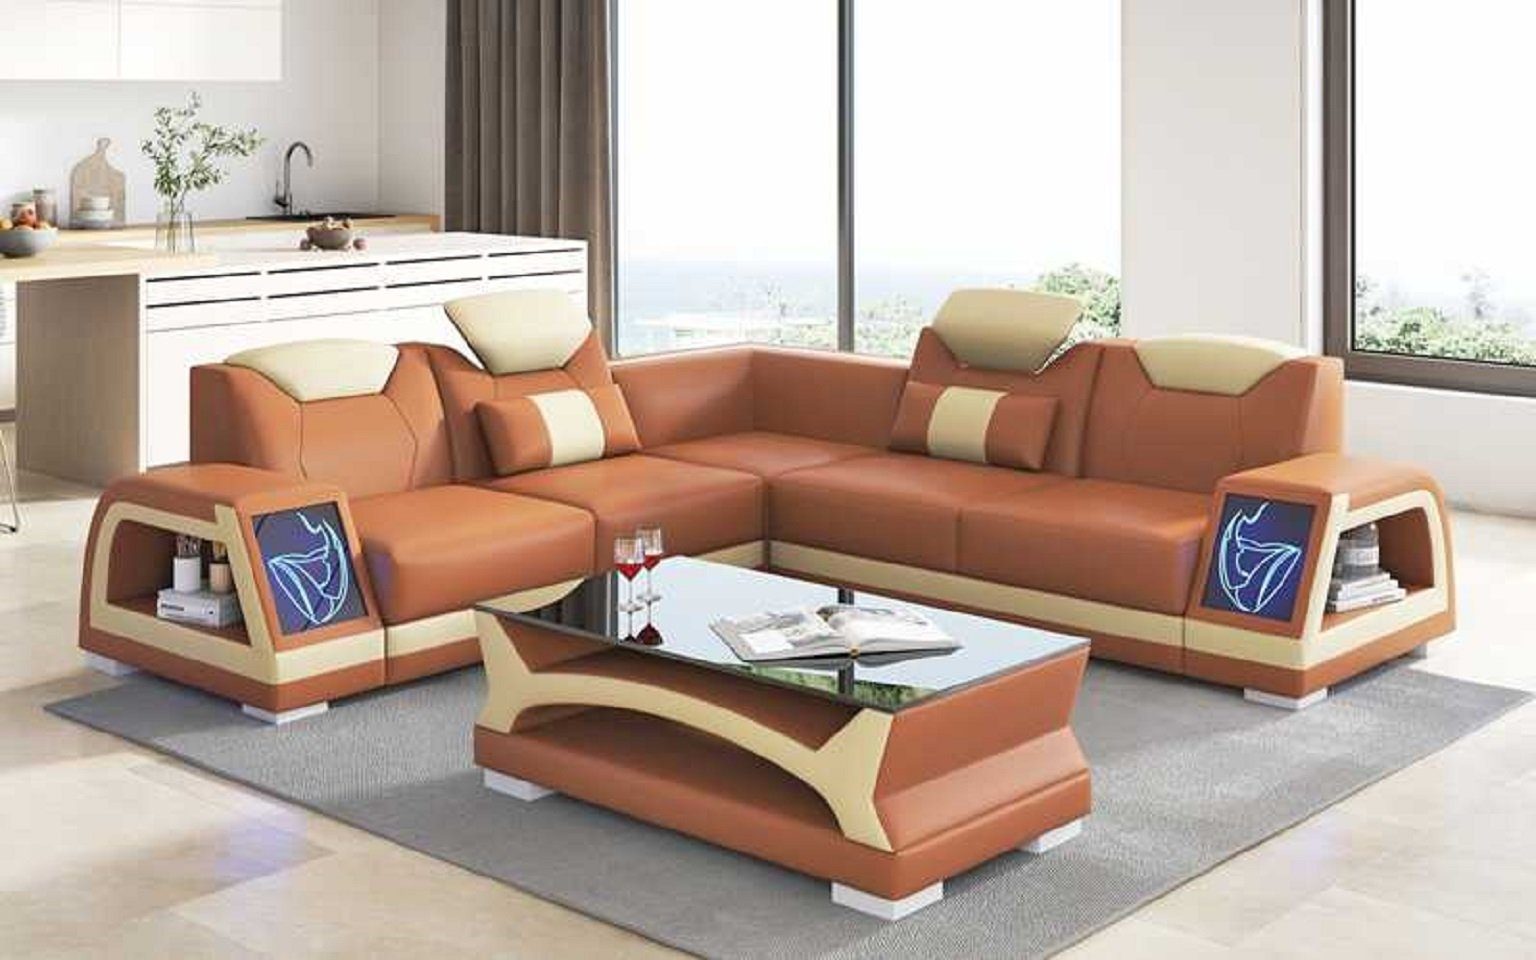 JVmoebel Ecksofa Form Sofa 3 Design Couch Couchen, in L Luxus Made Ecksofa Braun Europe Teile, Modern Kunstleder